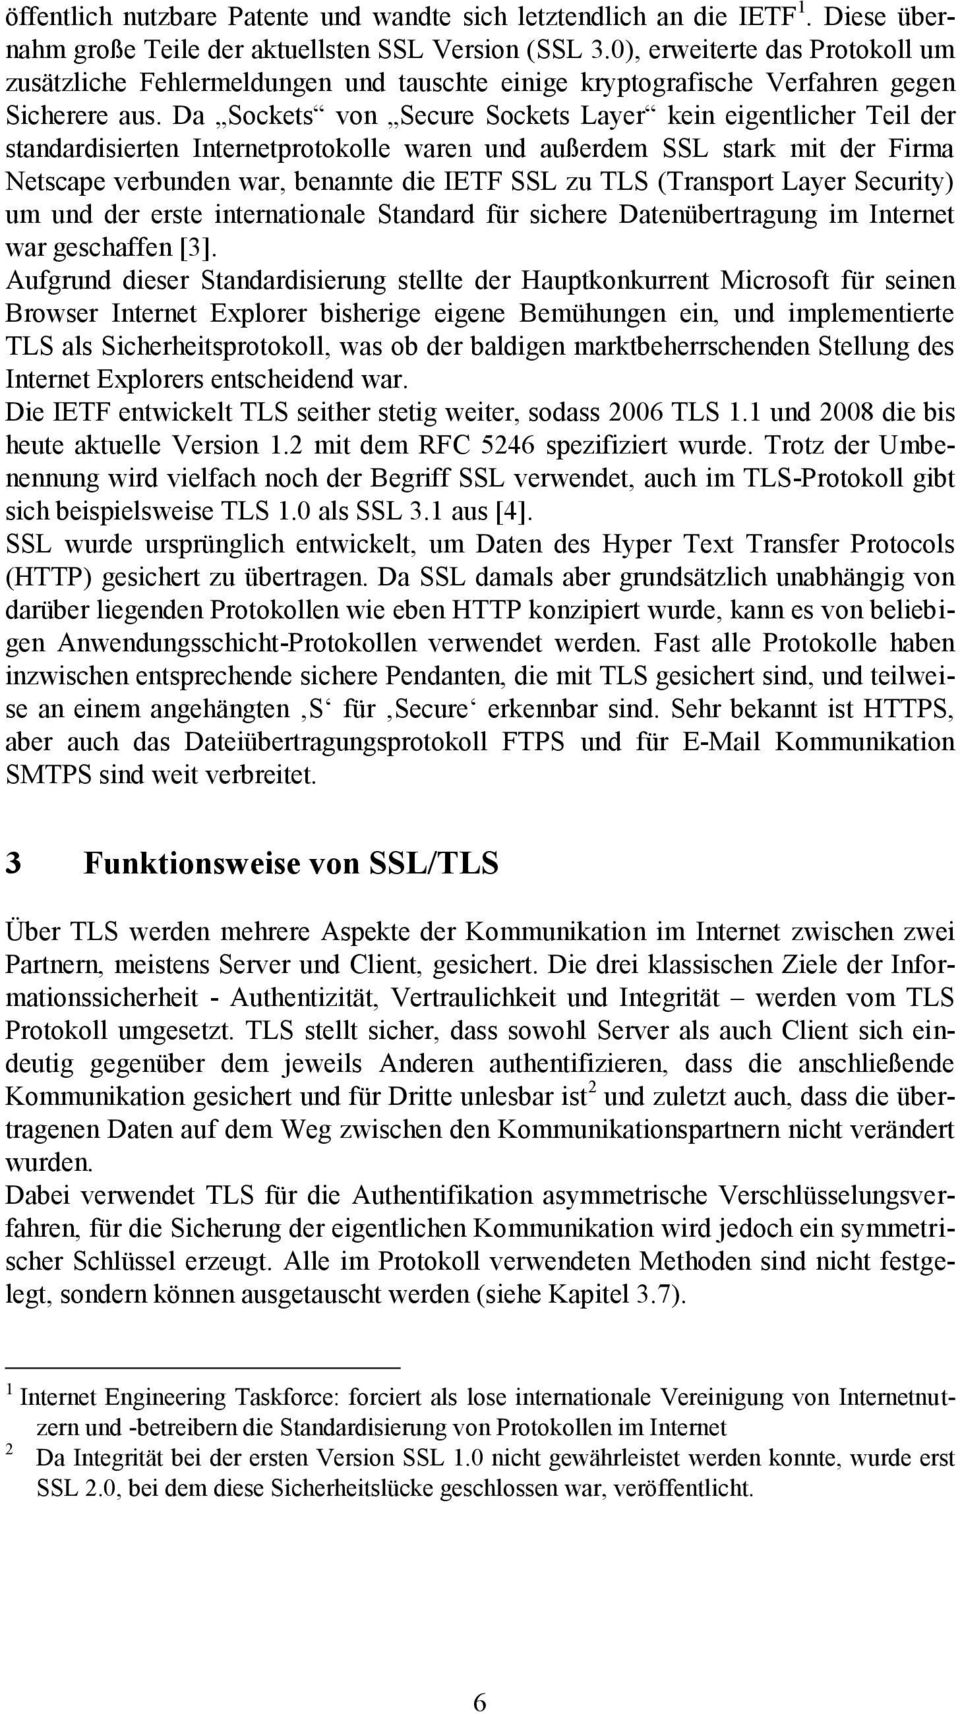 Da Sockets von Secure Sockets Layer kein eigentlicher Teil der standardisierten Internetprotokolle waren und außerdem SSL stark mit der Firma Netscape verbunden war, benannte die IETF SSL zu TLS